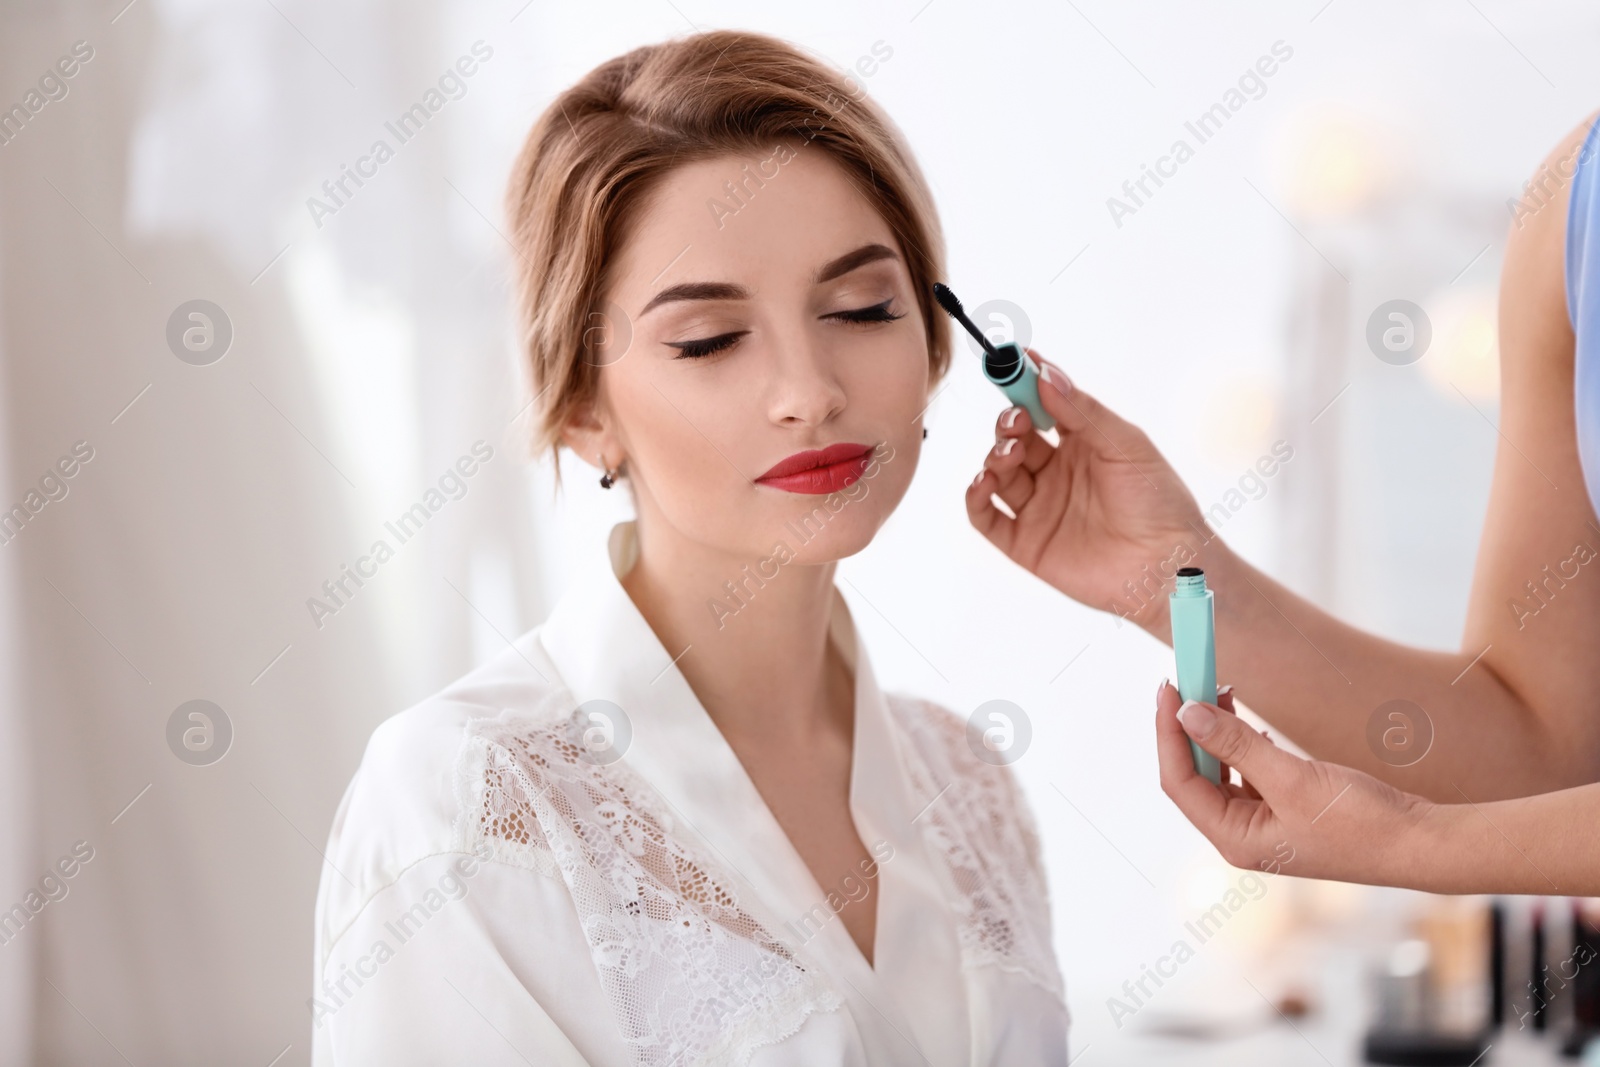 Photo of Makeup artist preparing bride before her wedding in room